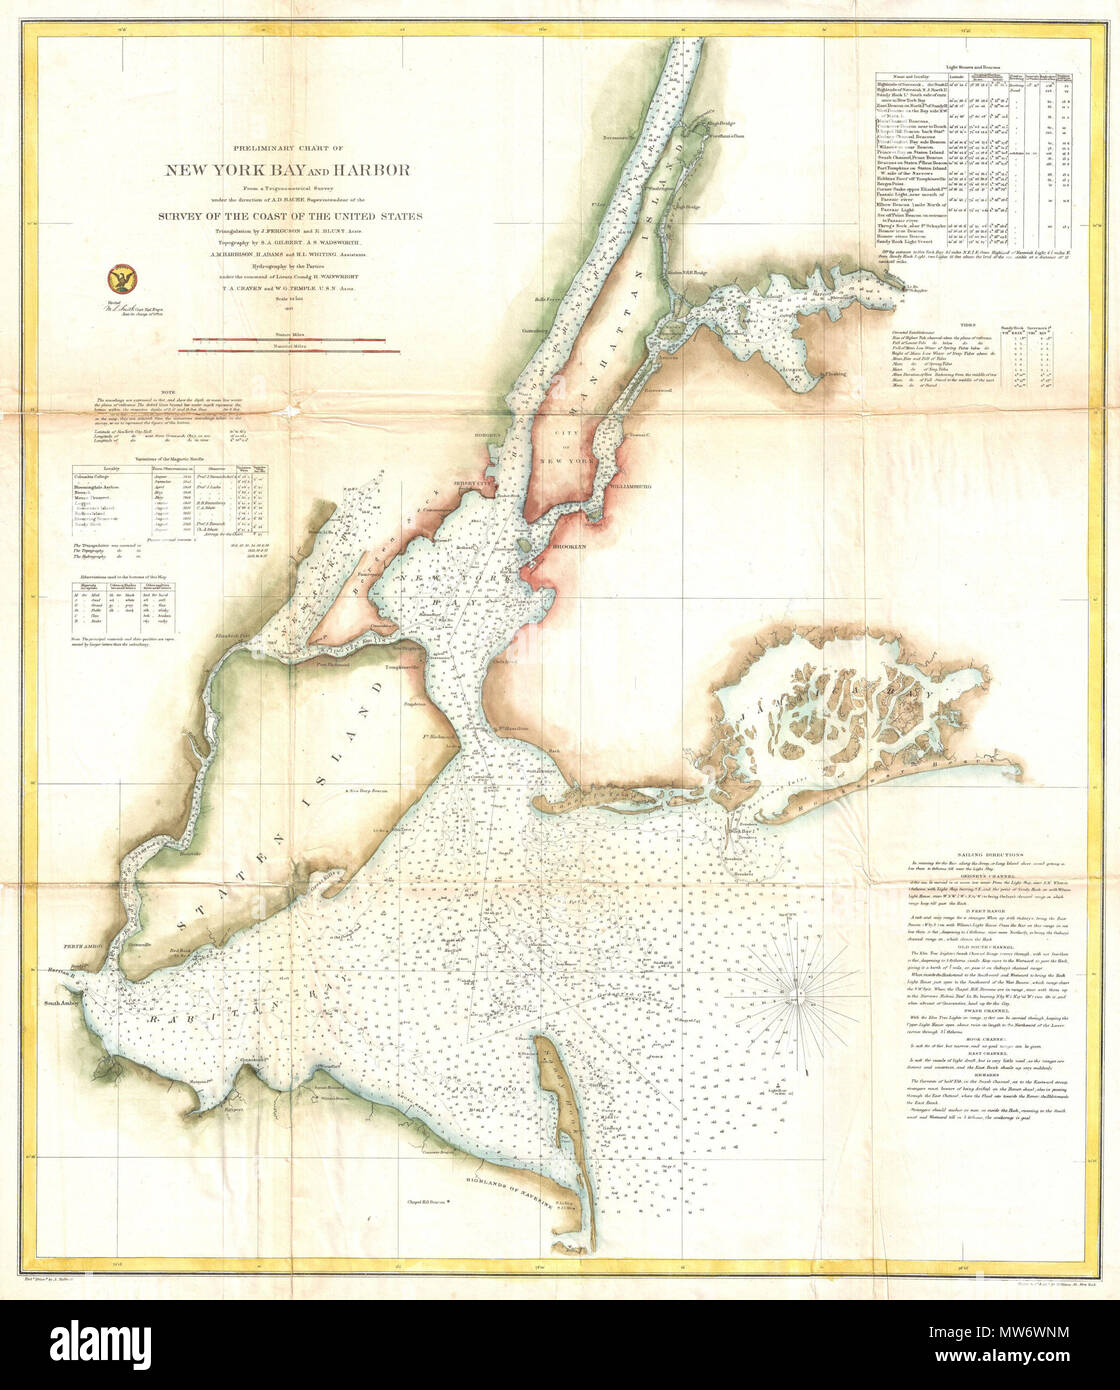 . Vorläufige Diagramm der New York Bay und den Hafen. Englisch: eine seltene 1857 Diagramm an der Küste von New York City, Hafen, und Umgebung. Einer der ersten des 19. Jahrhunderts Karren zu zeigt New York City wie wir sie heute kennen, einschließlich Manhattan, Queens, Brooklyn, die Bronx und Staten Island. Auch Jersey City, Newark und Hoboken. Dies ist einer der ältesten Staaten in der Entwicklung dieses speziellen Chart-Serie. Im Land der Details, die in späteren Plänen entwickelt werden, sind hier fast völlig abwesend. Diese Tabelle enthält eine Fülle von praktischen Informationen für das Mariner aus ozeanischen Tiefen, Hafen Stockfoto